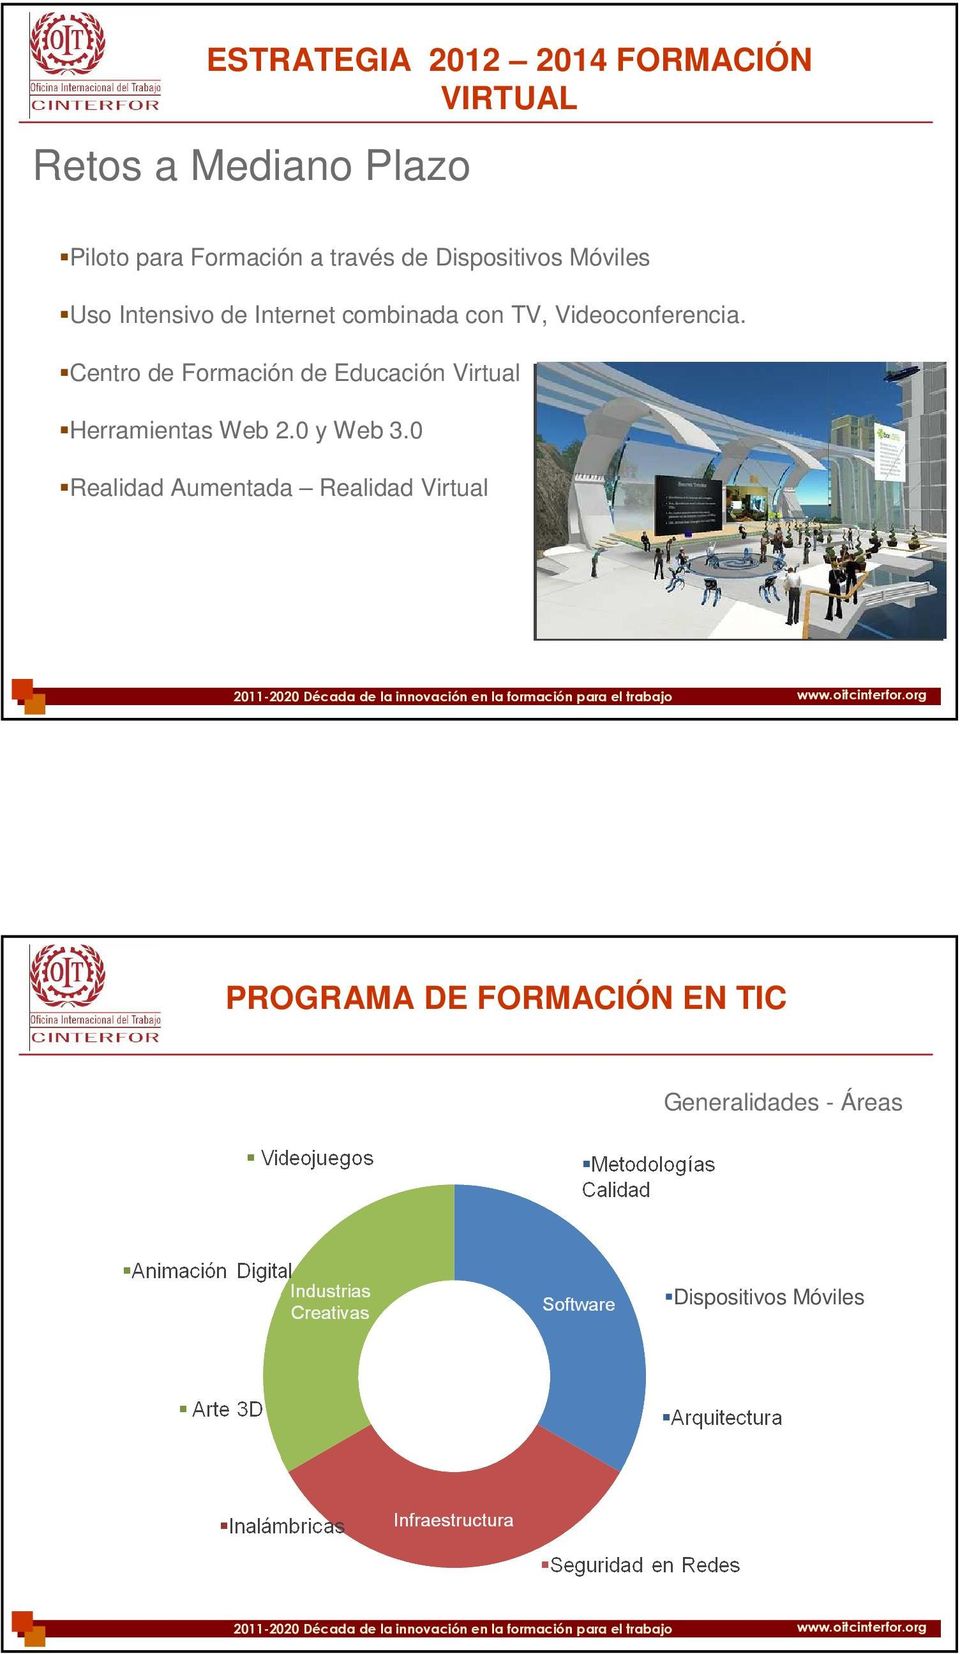 Videoconferencia. Centro de Formación de Educación Virtual Herramientas Web 2.0 y Web 3.